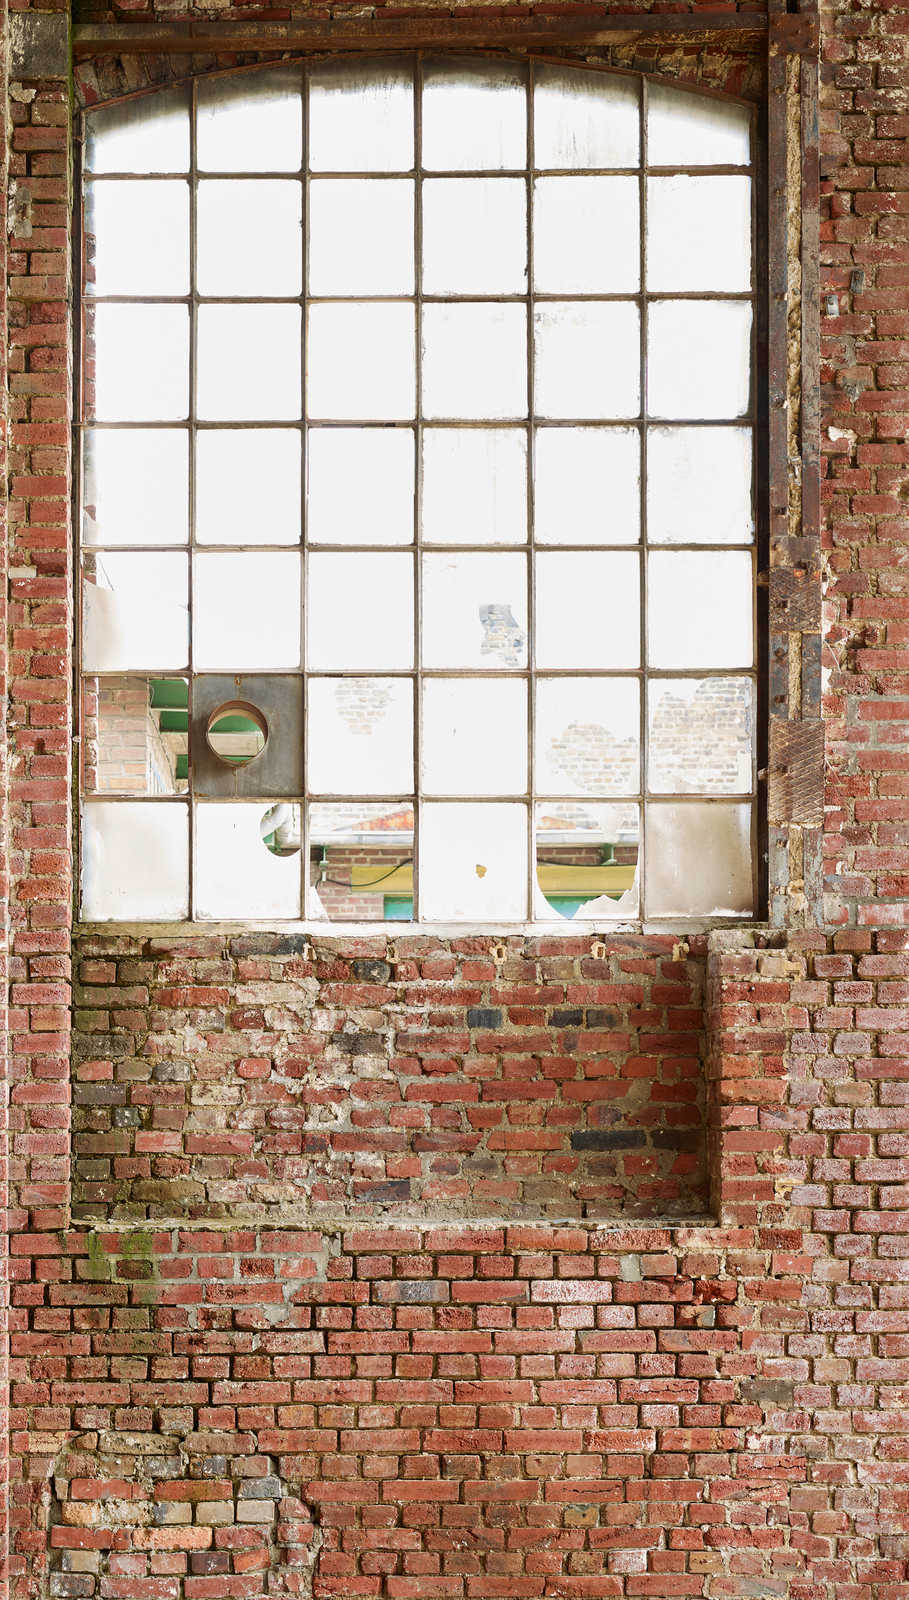             Tapete mit Ausschnitt eines Fensters von alter Fabrik – Braun, Creme, Beige
        